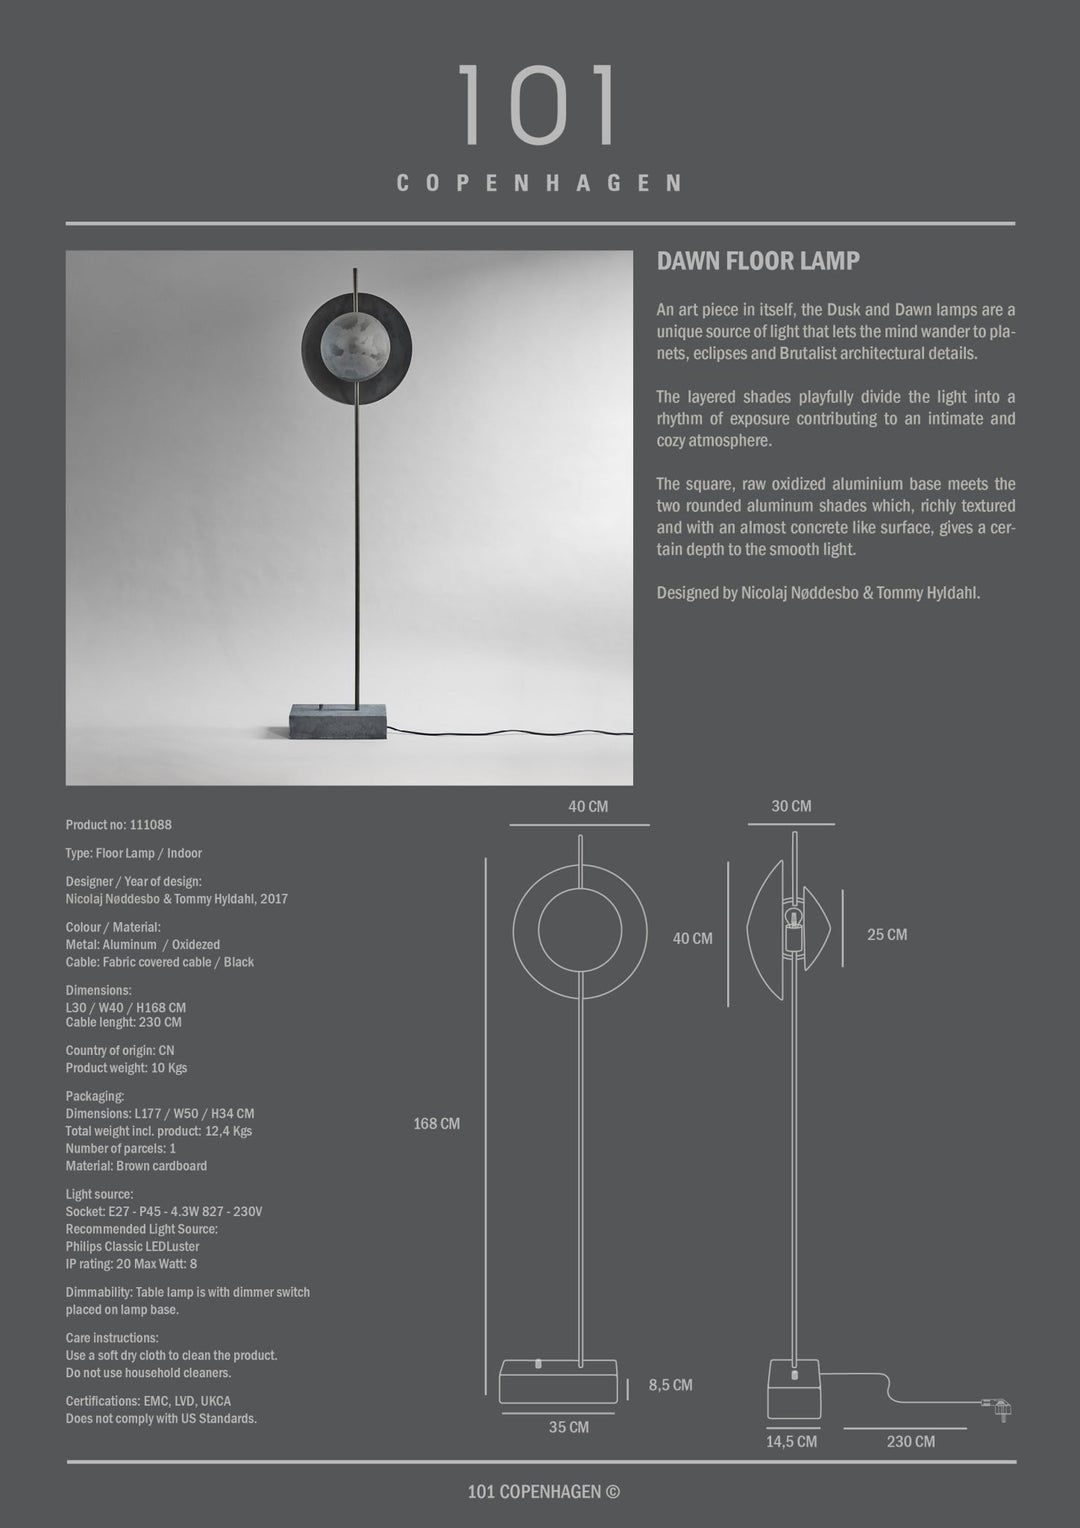 101 Copenhagen Dawn Floor Lamp - $1,295.00